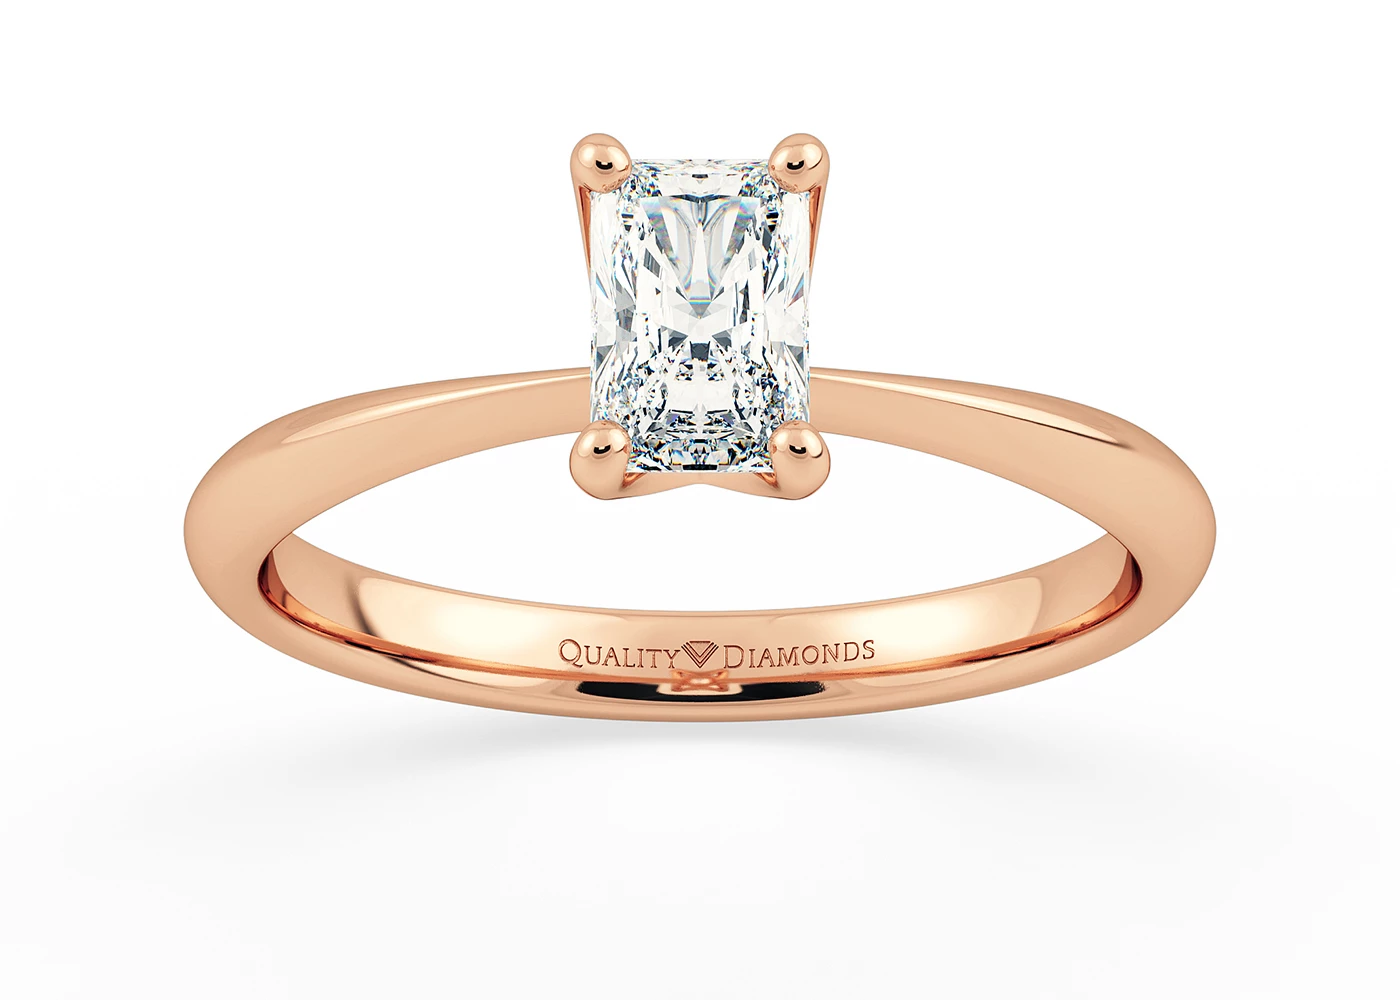 Radiant Amorette Diamond Ring in 9K Rose Gold